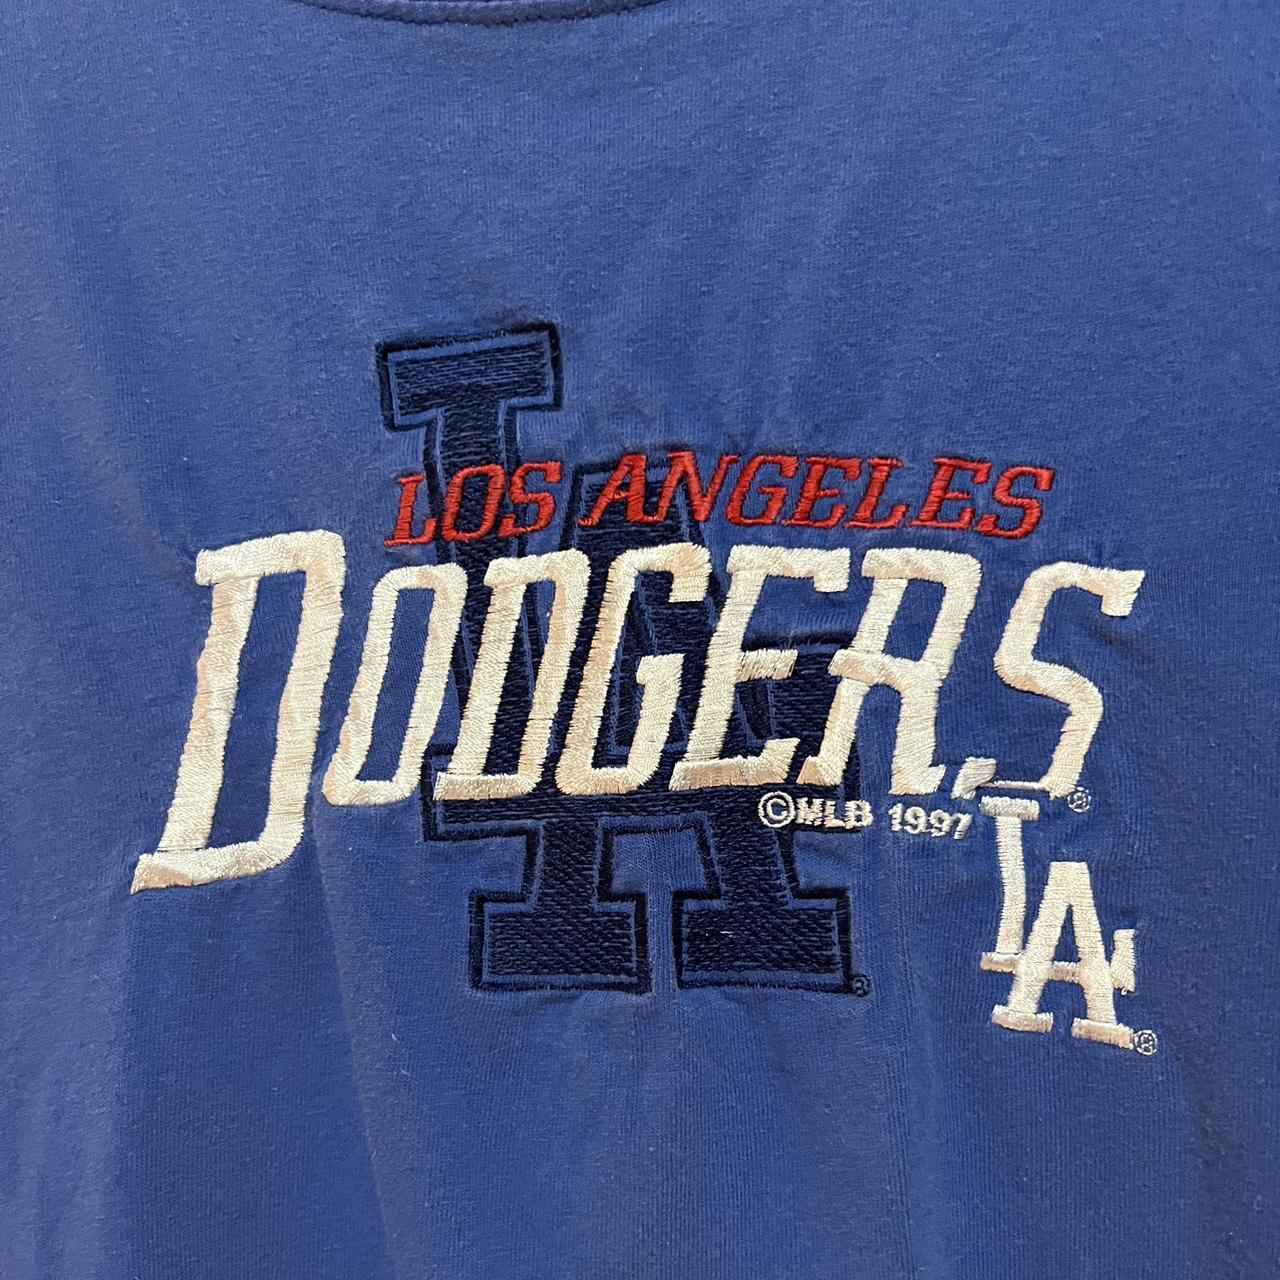 🔥🔥🔥 vintage 1995 Dodgers shirt by Salem Sports .. - Depop